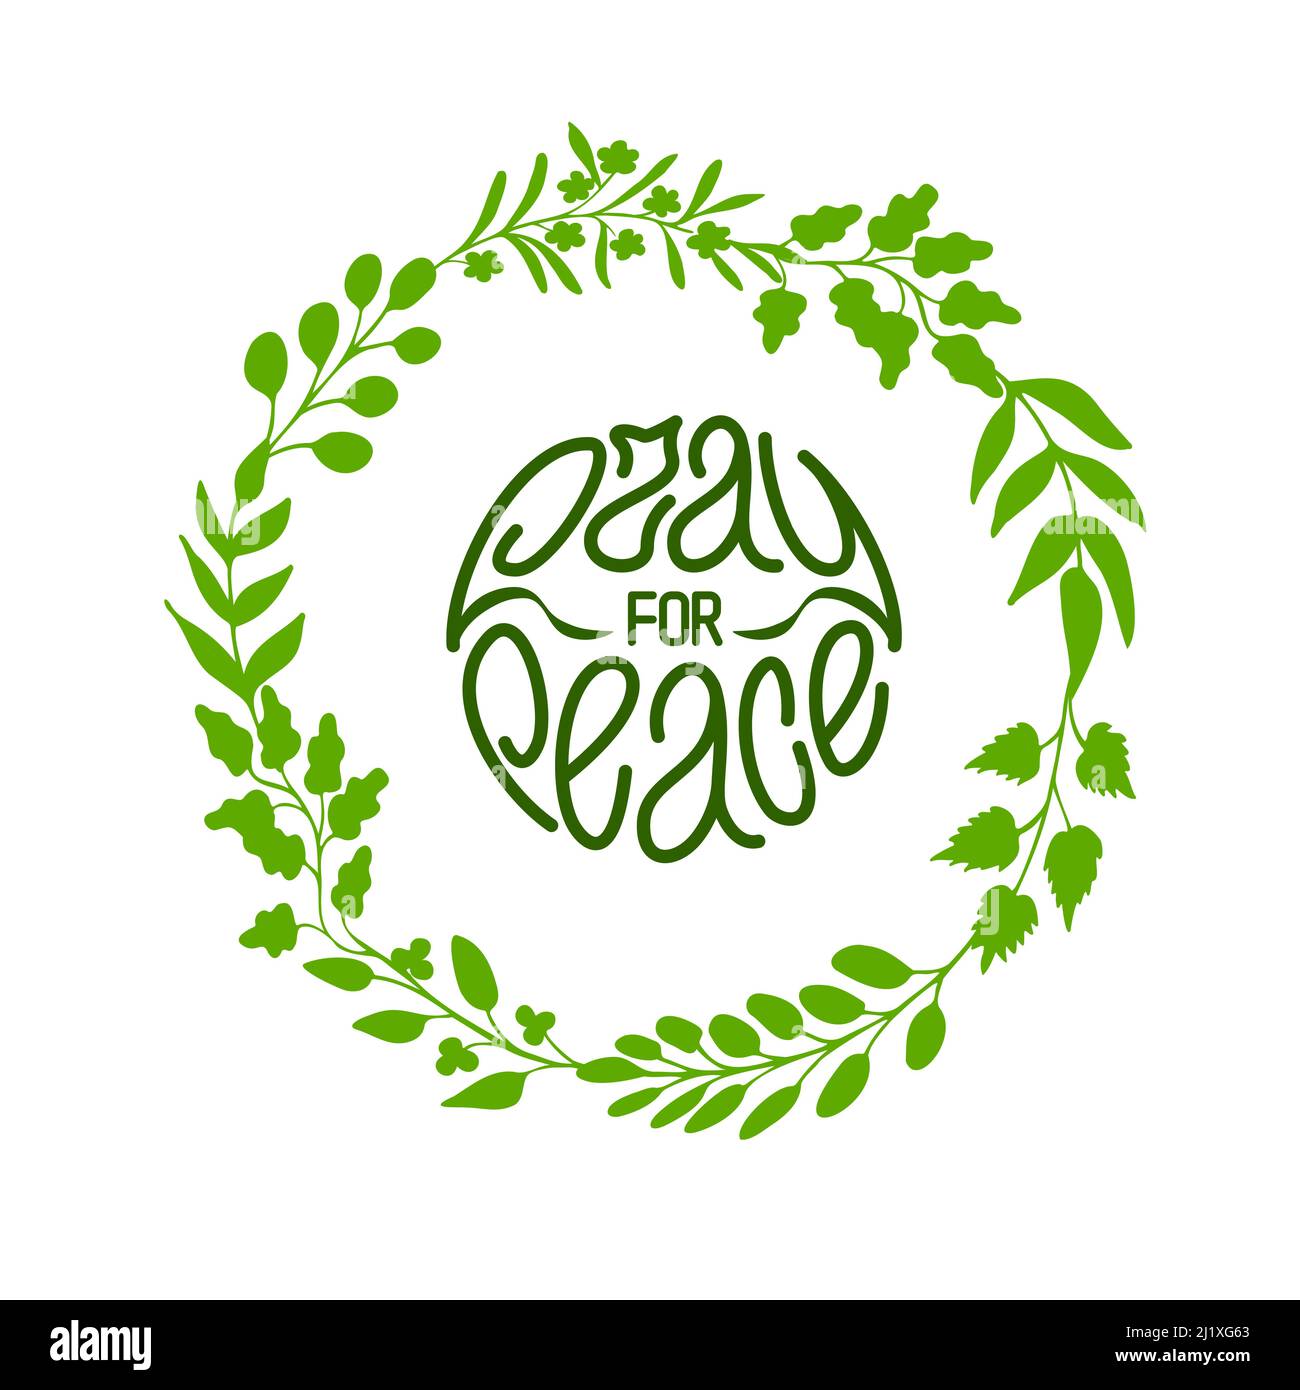 Betet für den Frieden. Einfacher und schöner handgezeichneter Schriftzug mit grünem Kräuterkranz in Runde. Vektorgrafik Stock Vektor